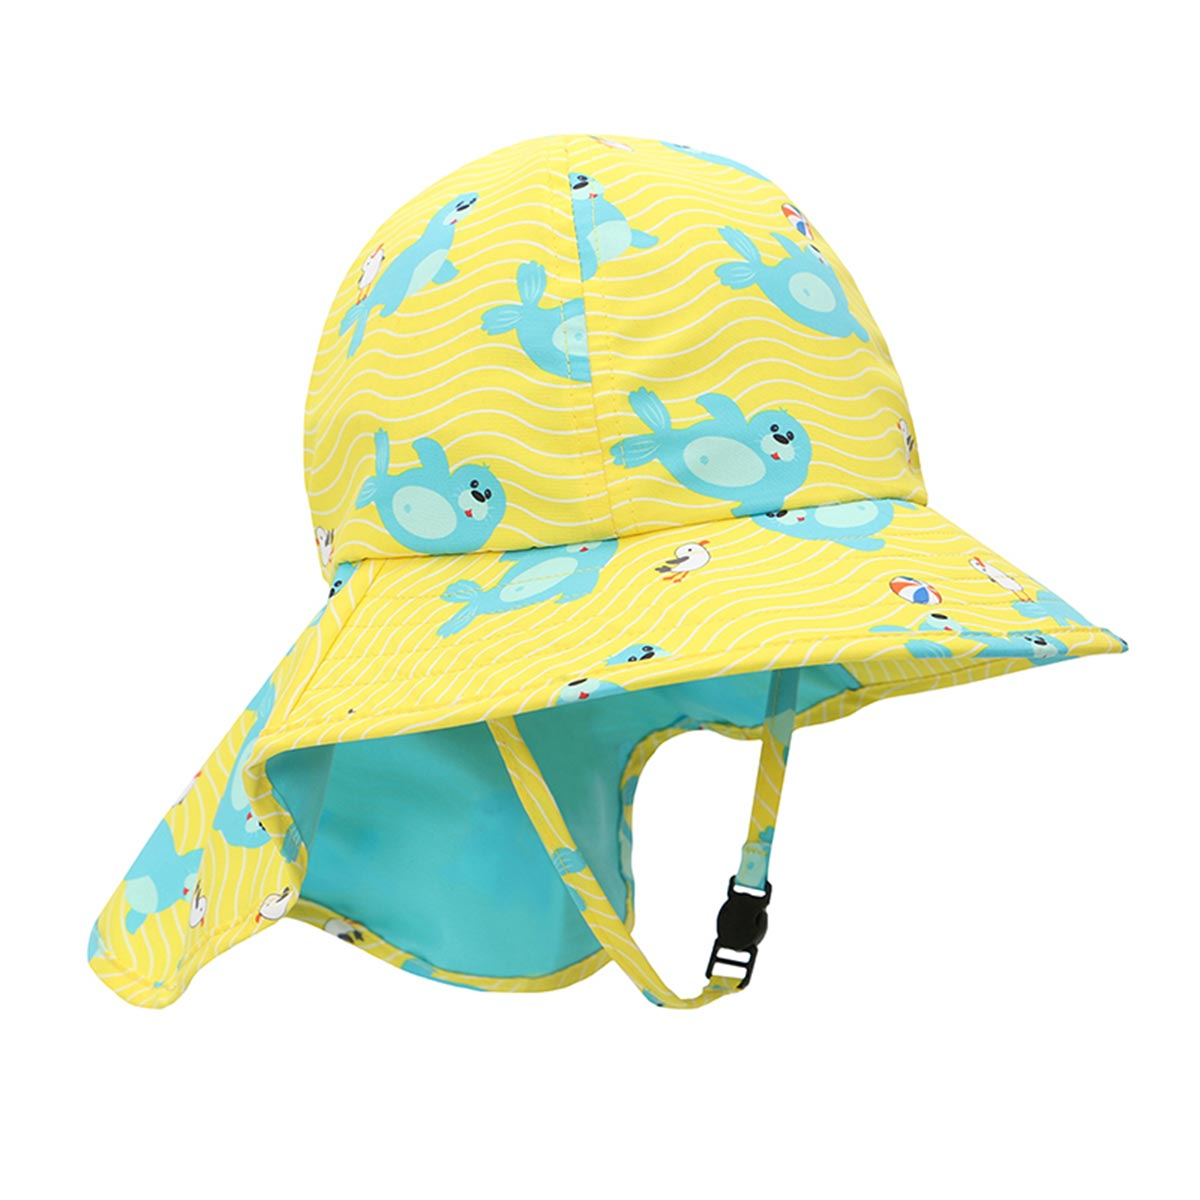 Βρεφικό Καπέλο Με Αντηλιακή Προστασία Zoocchini Seal 2-4 Ετών 2-4 Ετών